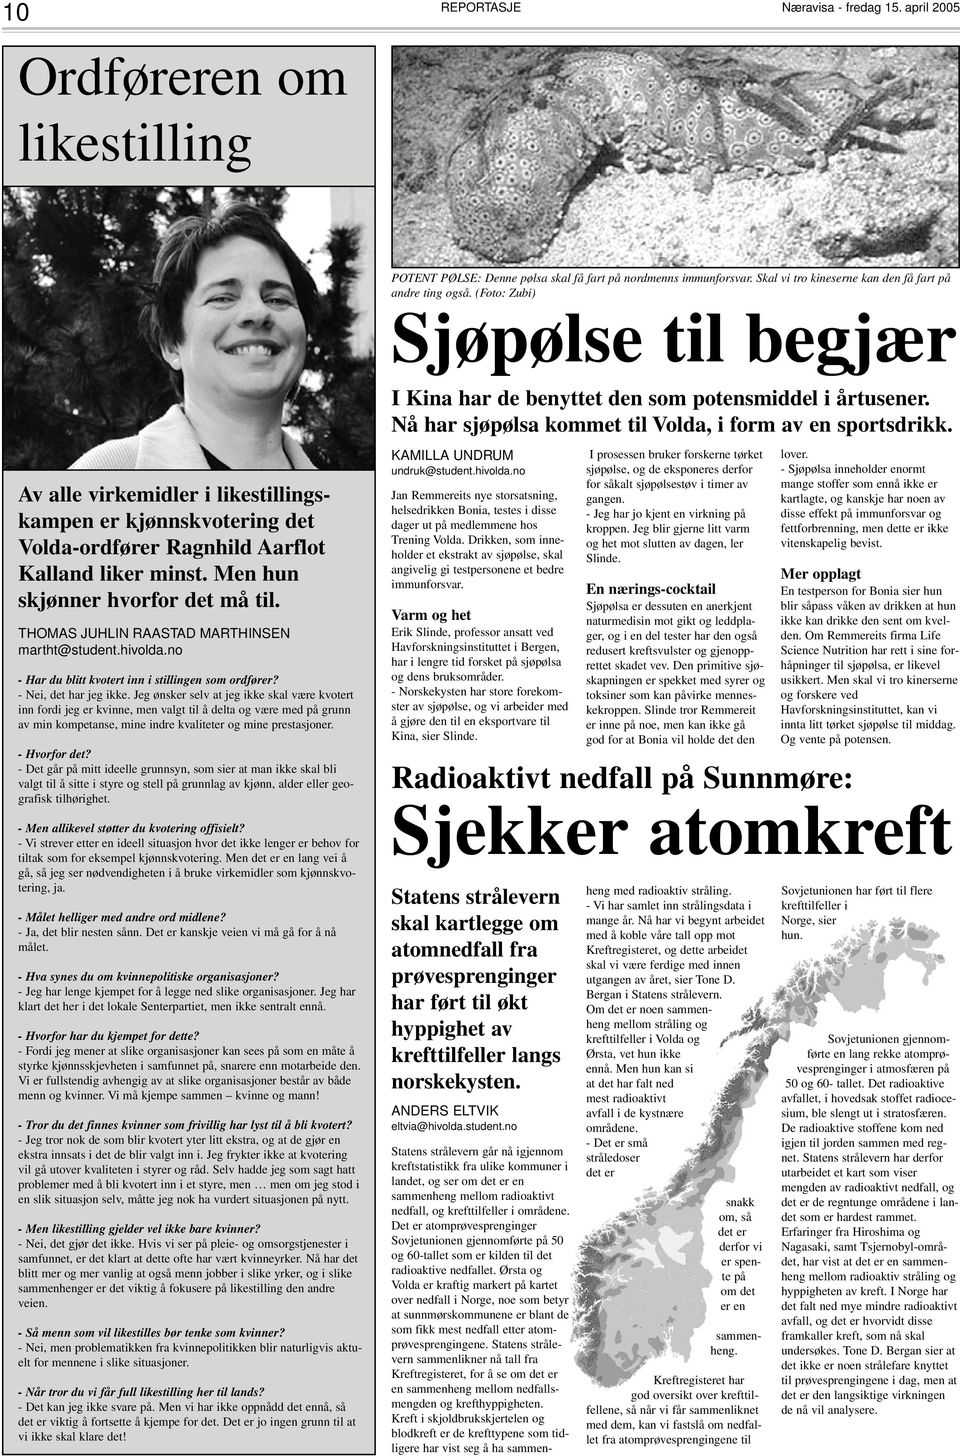 Av alle virkemidler i likestillingskampen er kjønnskvotering det Volda-ordfører Ragnhild Aarflot Kalland liker minst. Men hun skjønner hvorfor det må til.